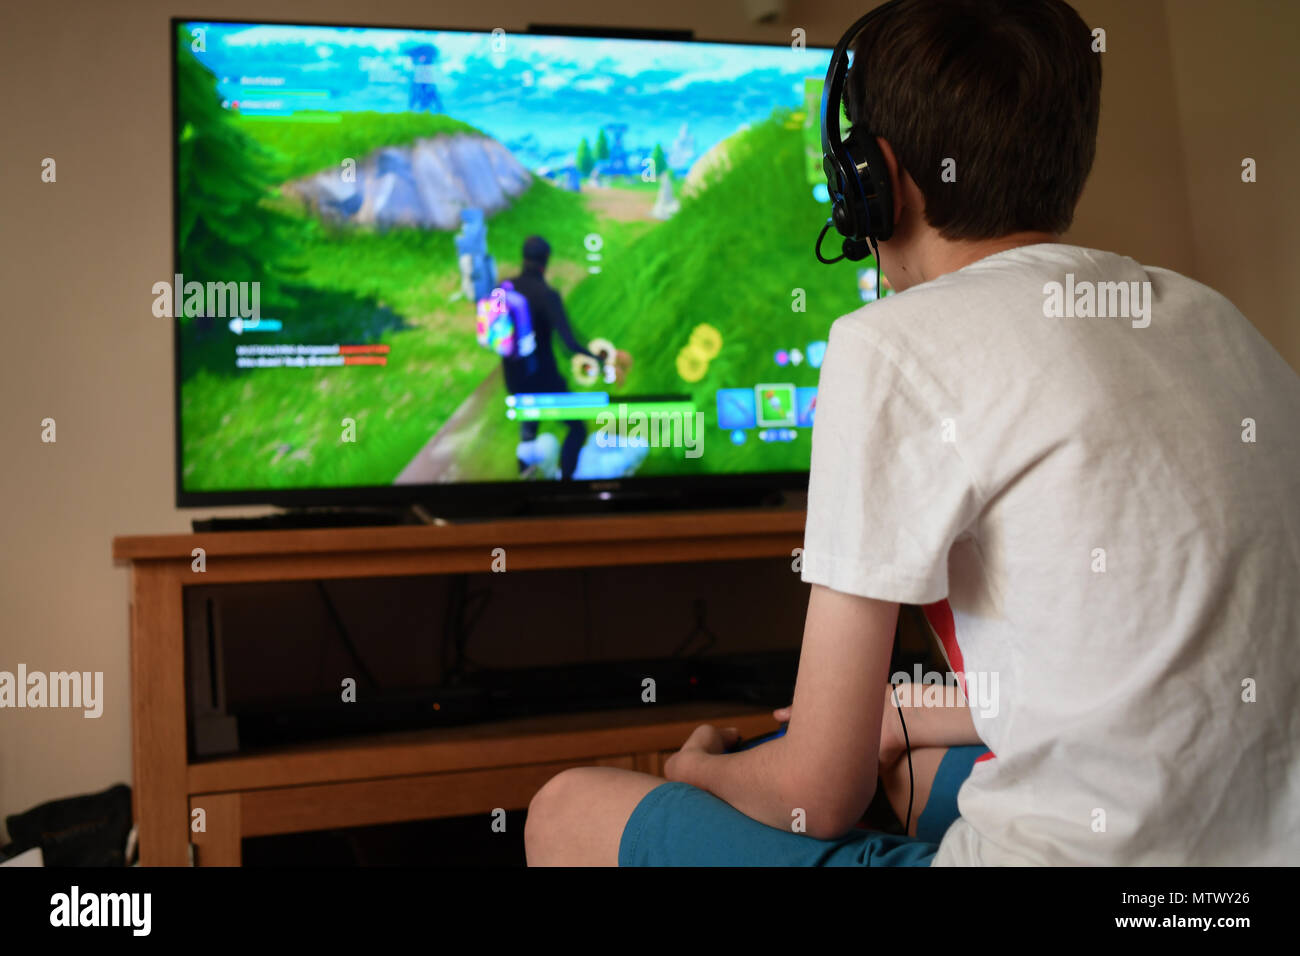 Un adolescent de 13 ans Fortnite joue sur le jeu PS4 à l'aide d'un casque  pour communiquer avec d'autres joueurs dans son équipe Photo Stock - Alamy